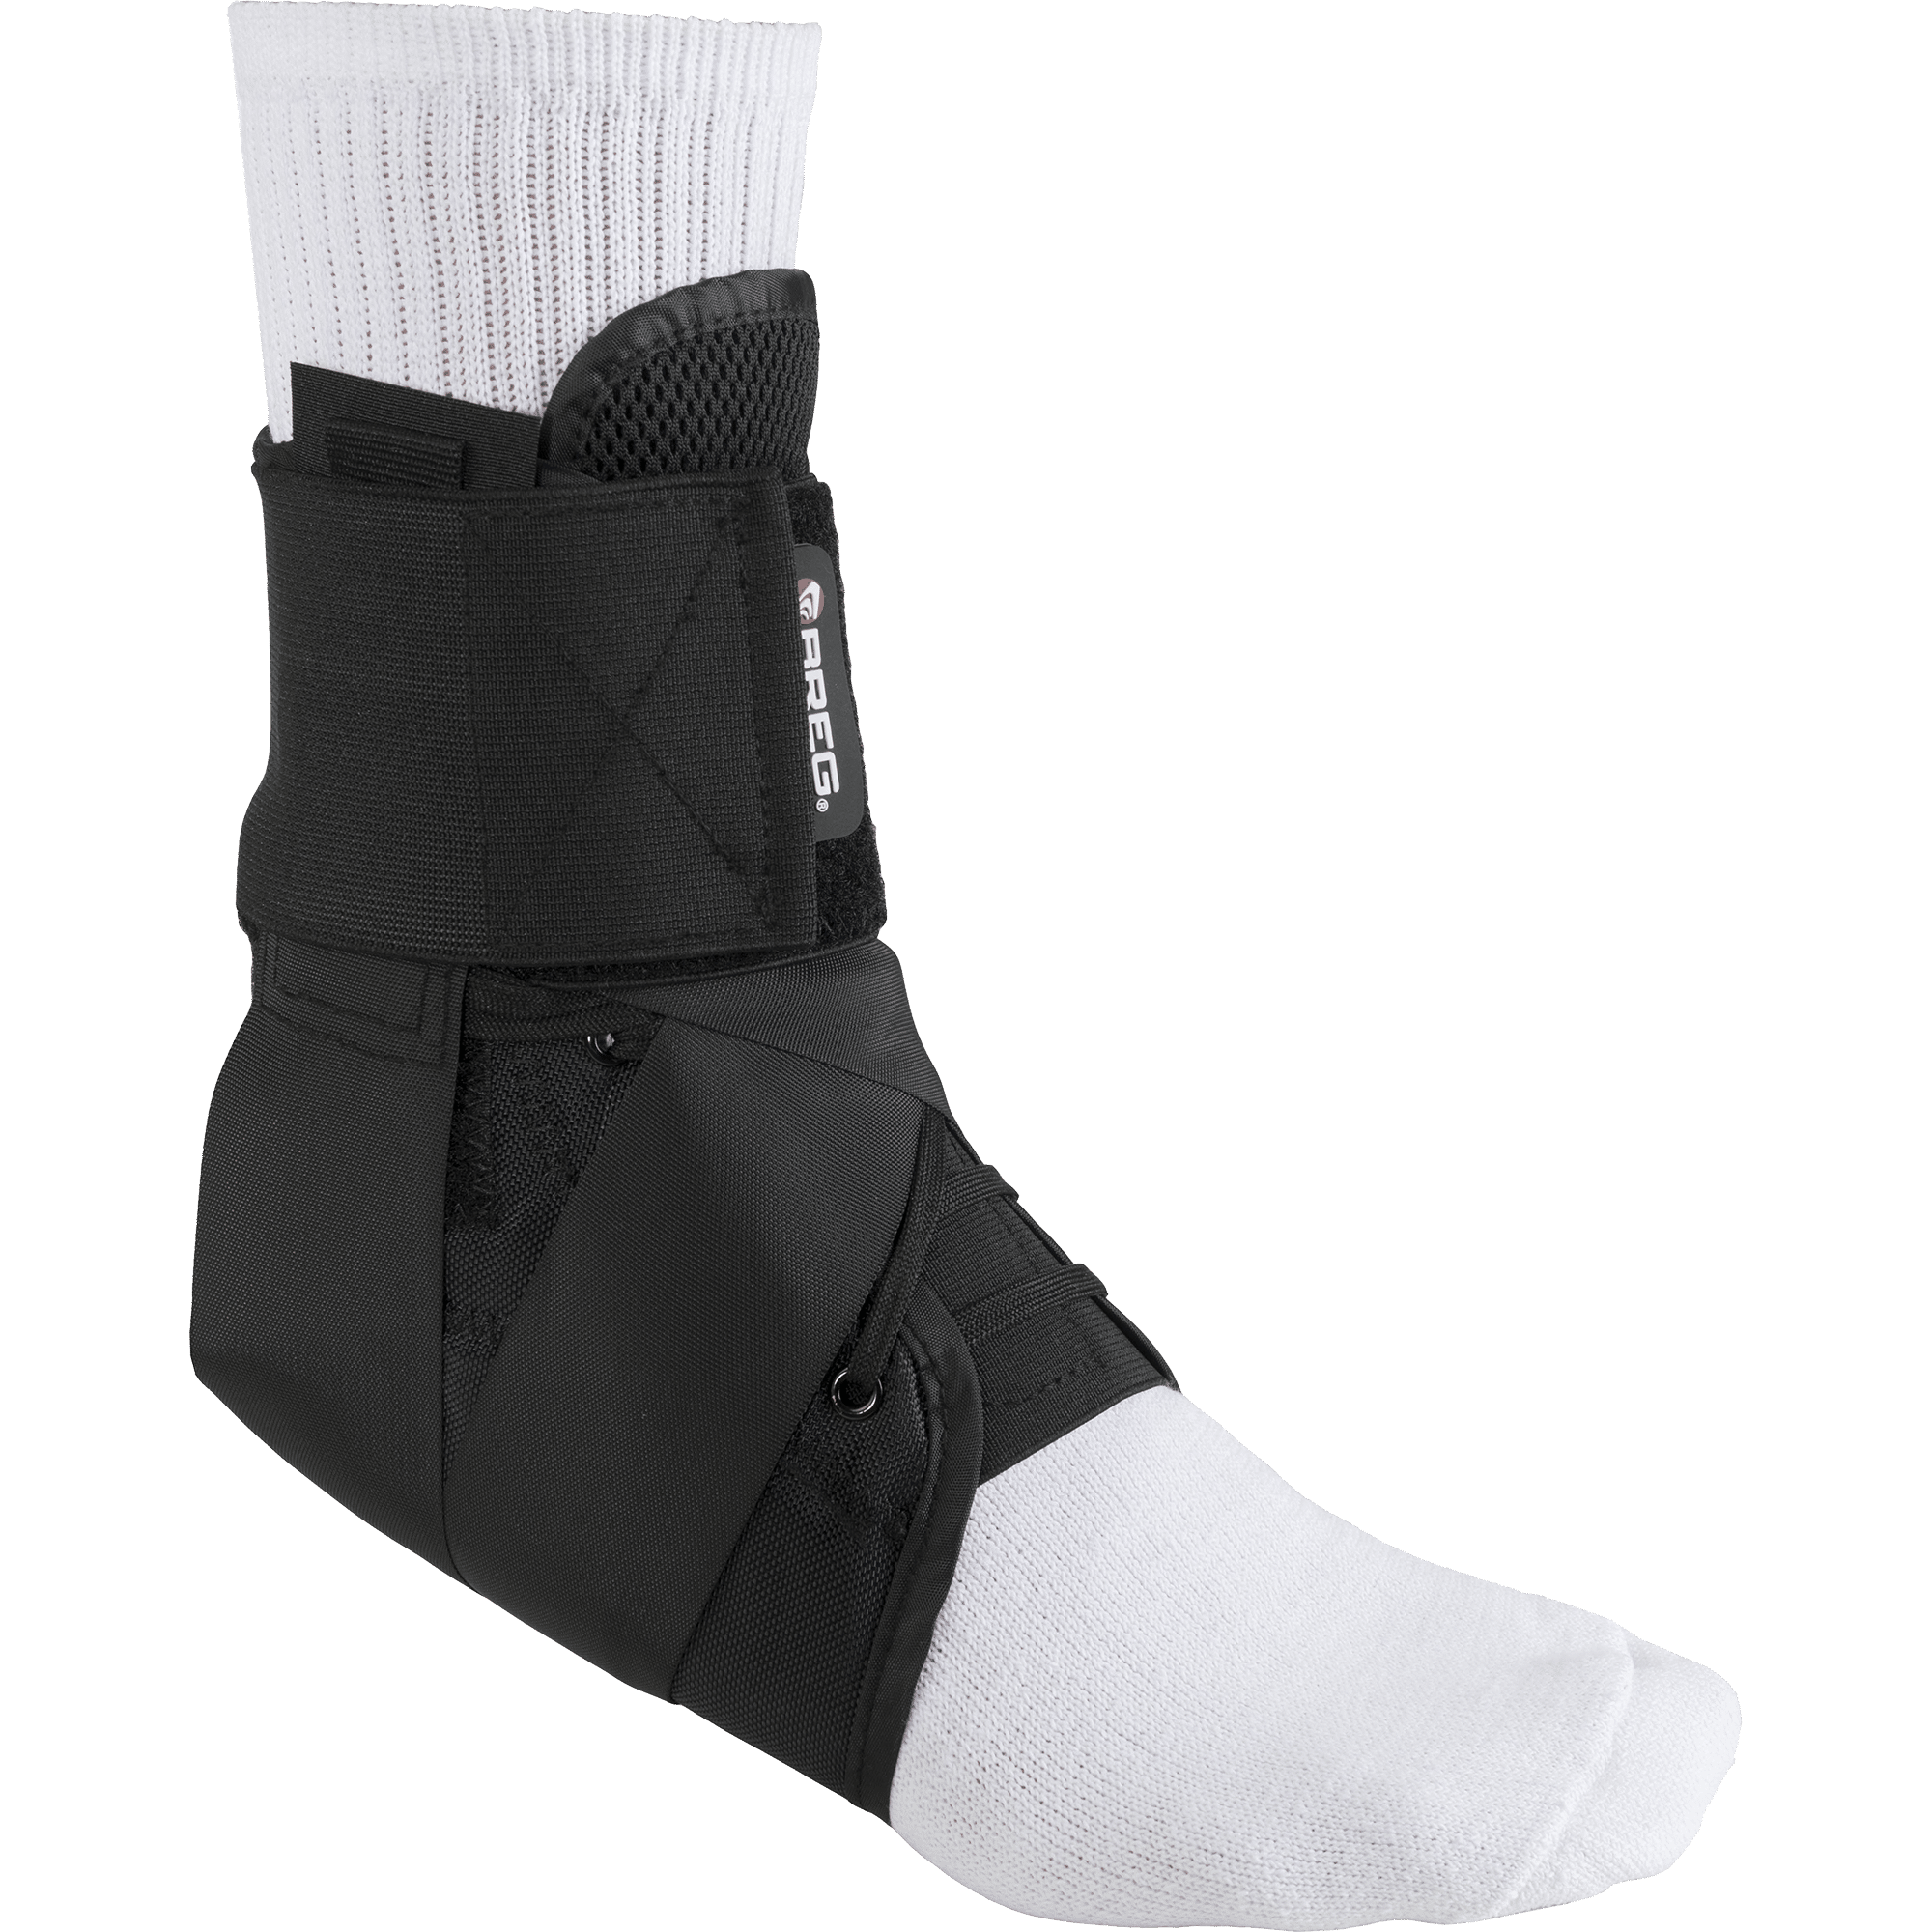 PST Sock Taping Kit - White